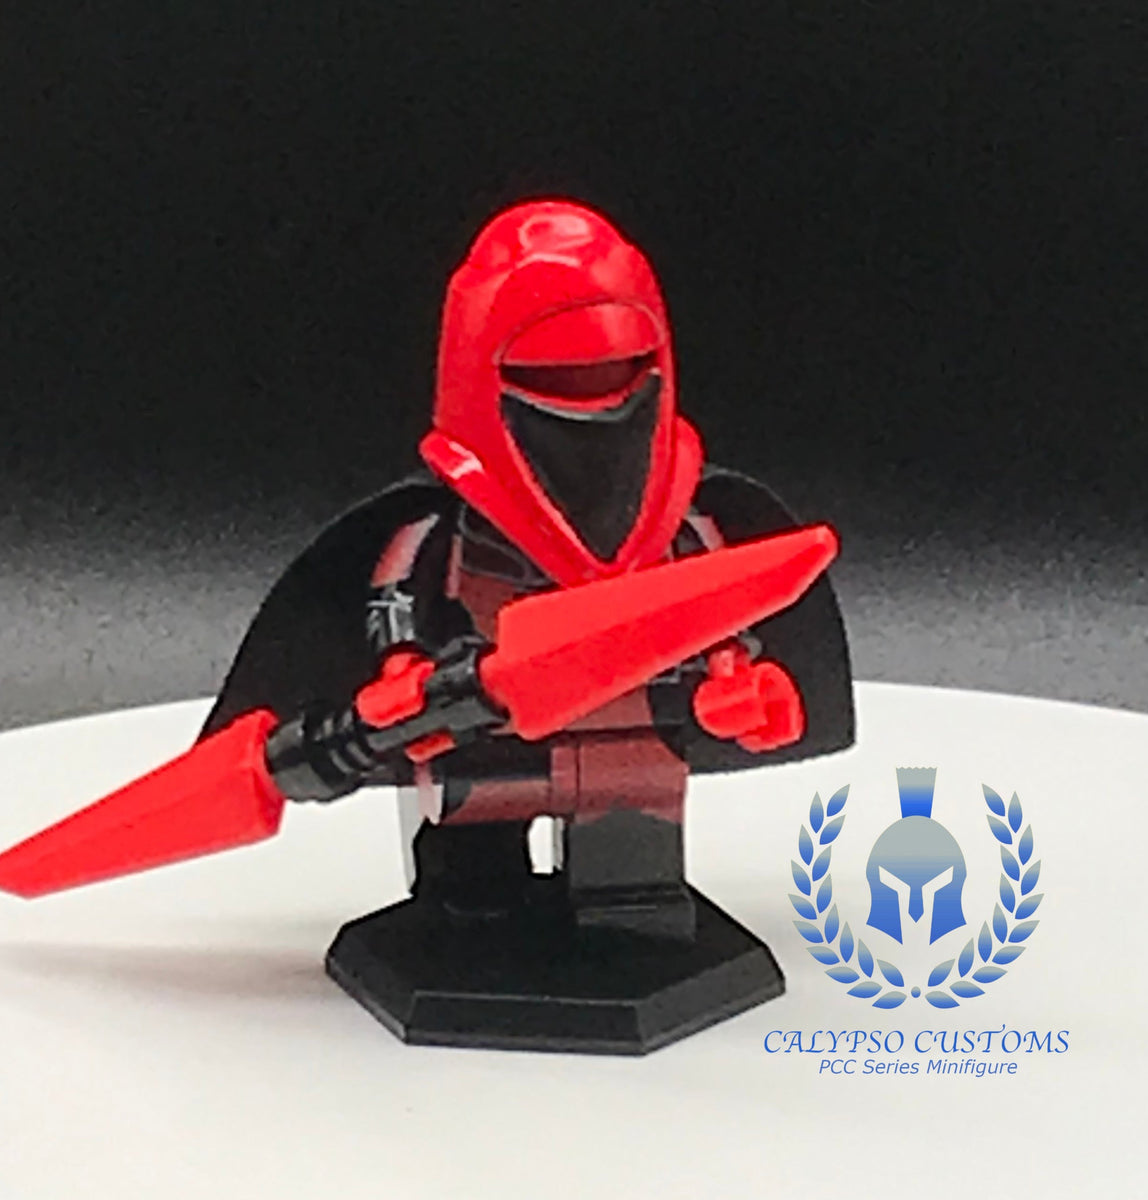 **NEW** Custom Printed CARNOR JAX Star Wars Imperial Guard Block Minifigure 